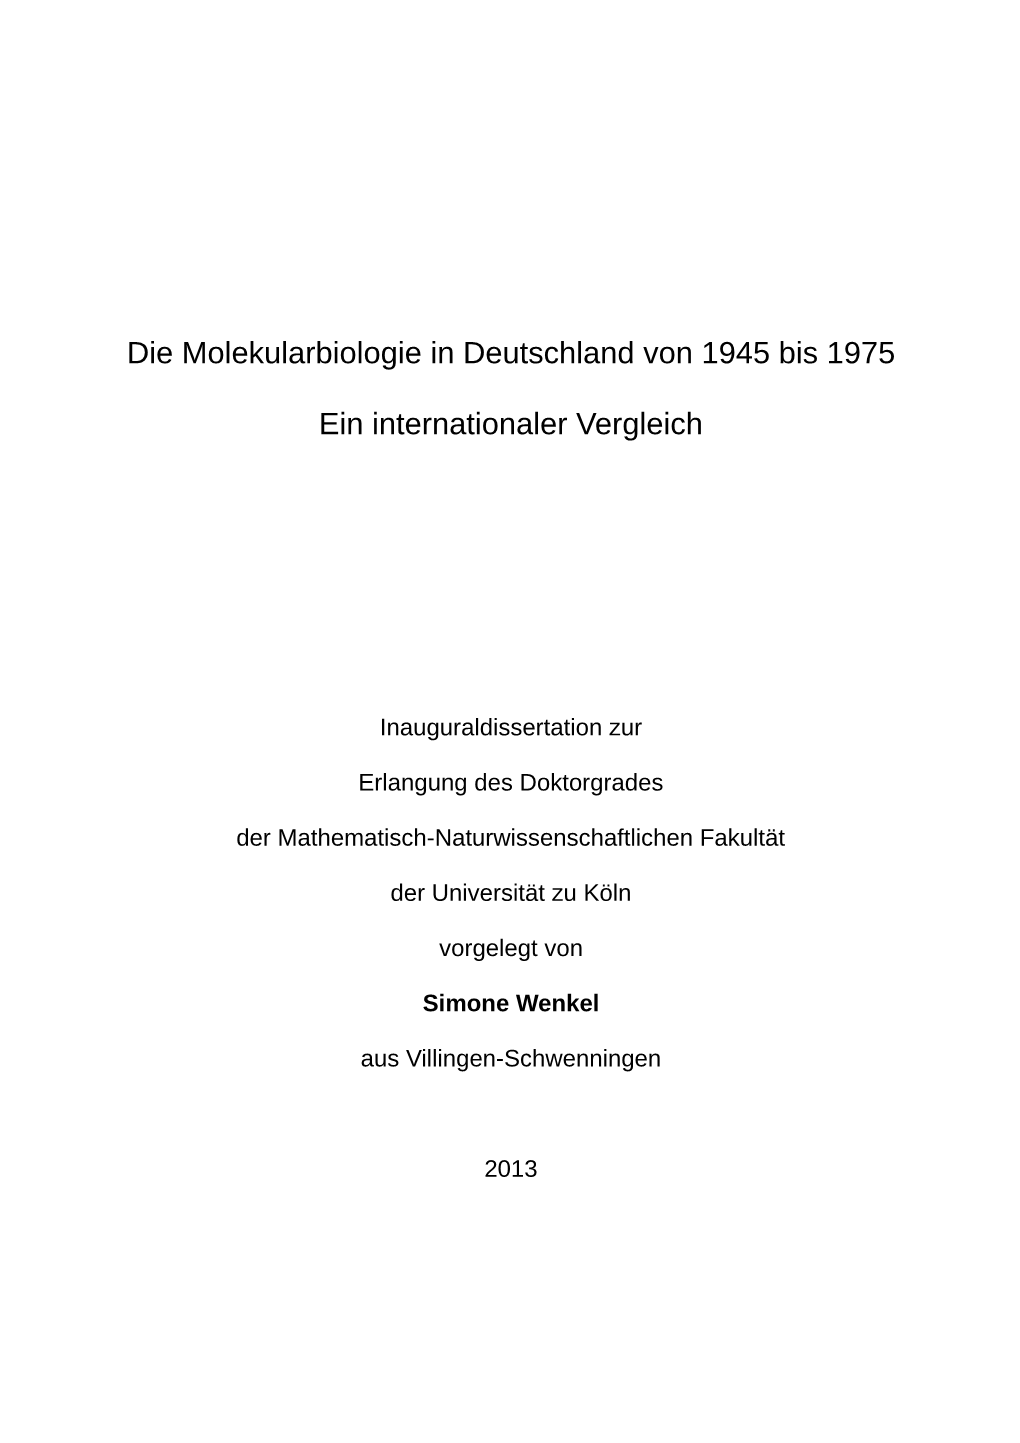 Die Molekularbiologie in Deutschland Von 1945 Bis 1975